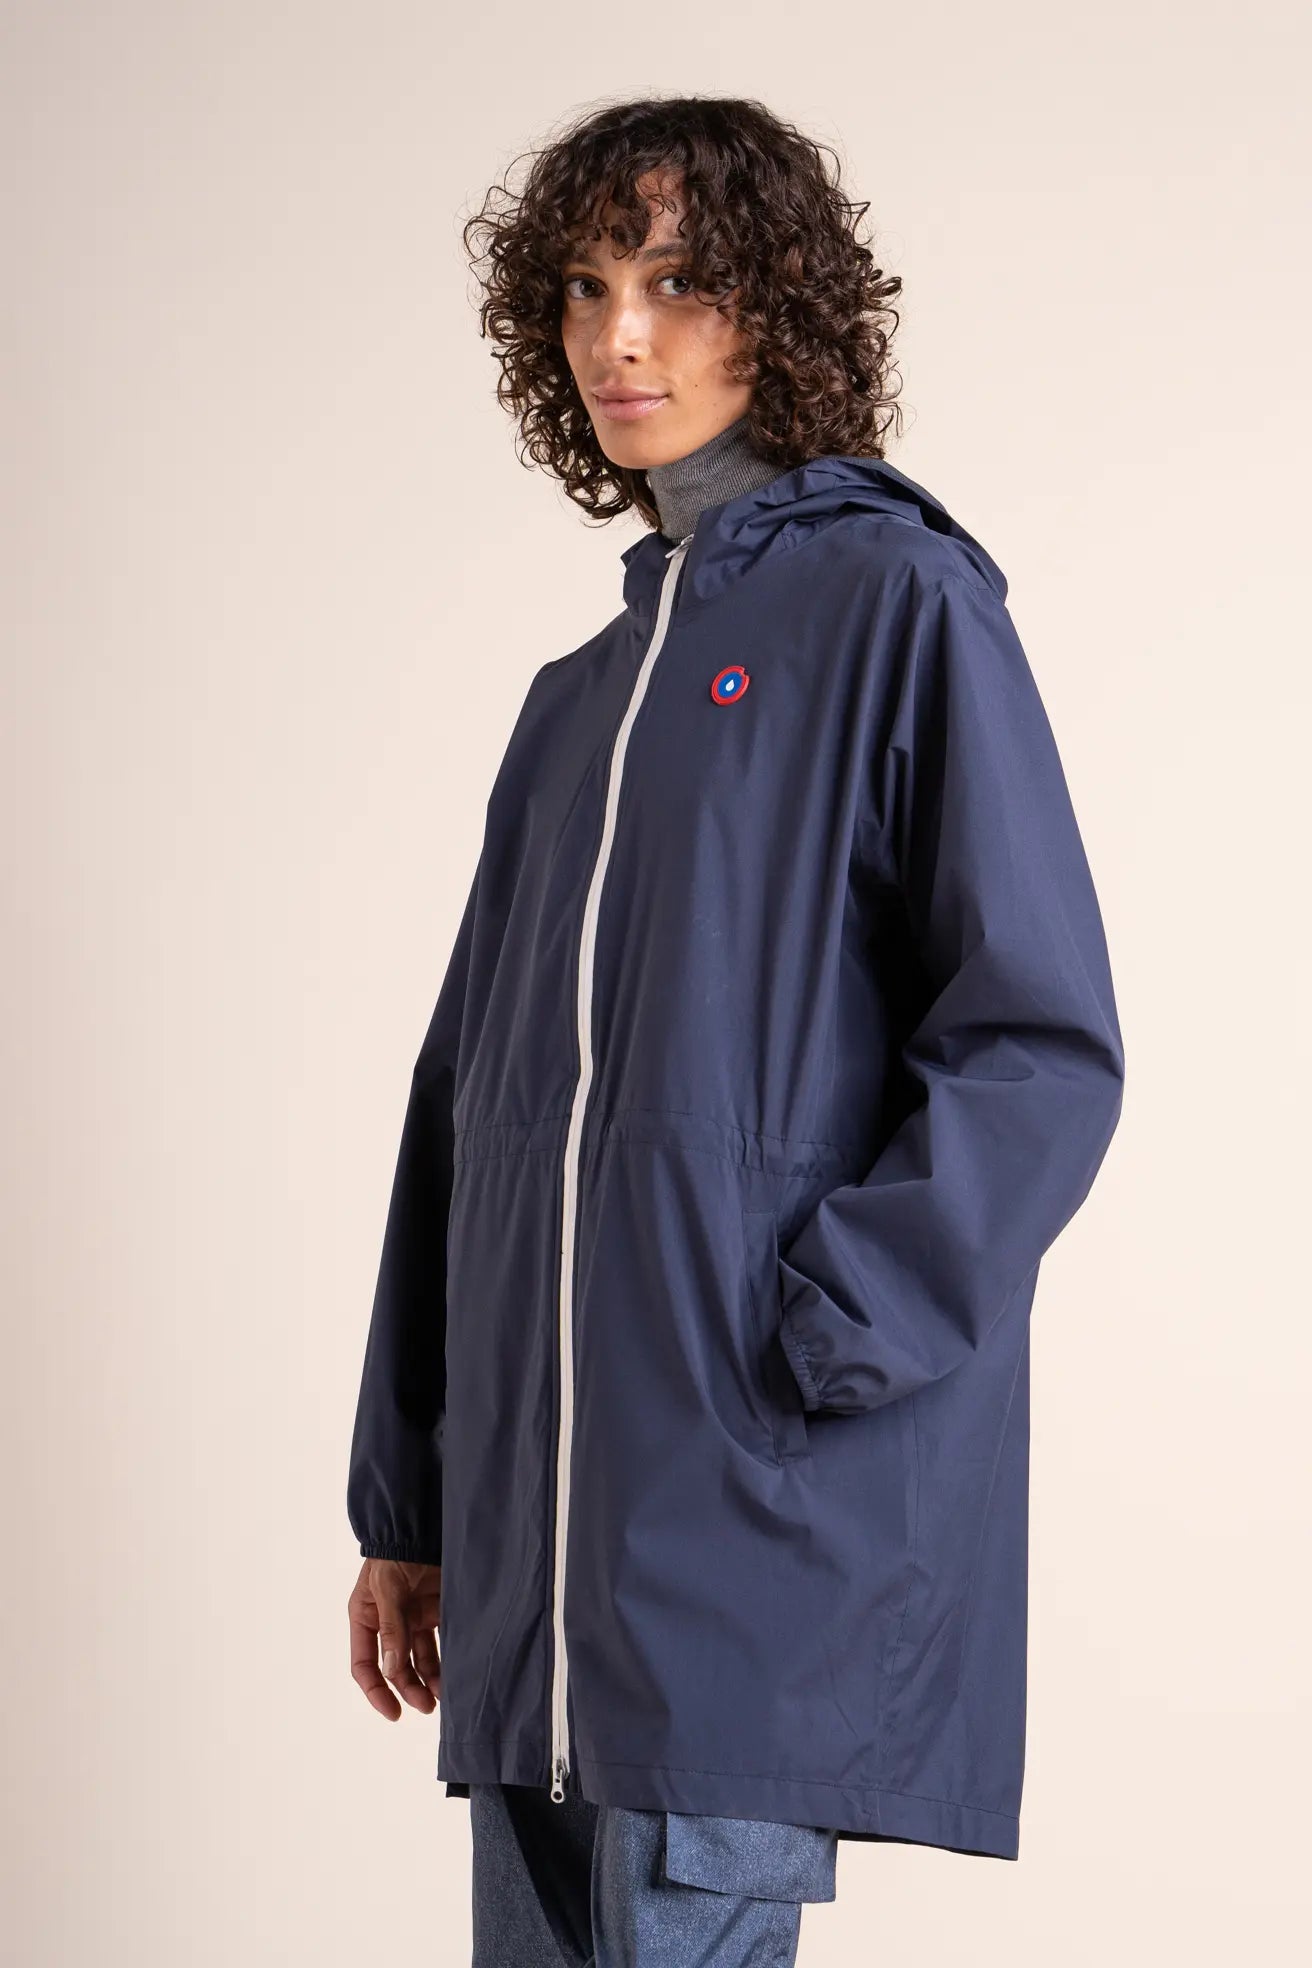 Amelot Classique - Long raincoat - Flotte #couleur_indigo